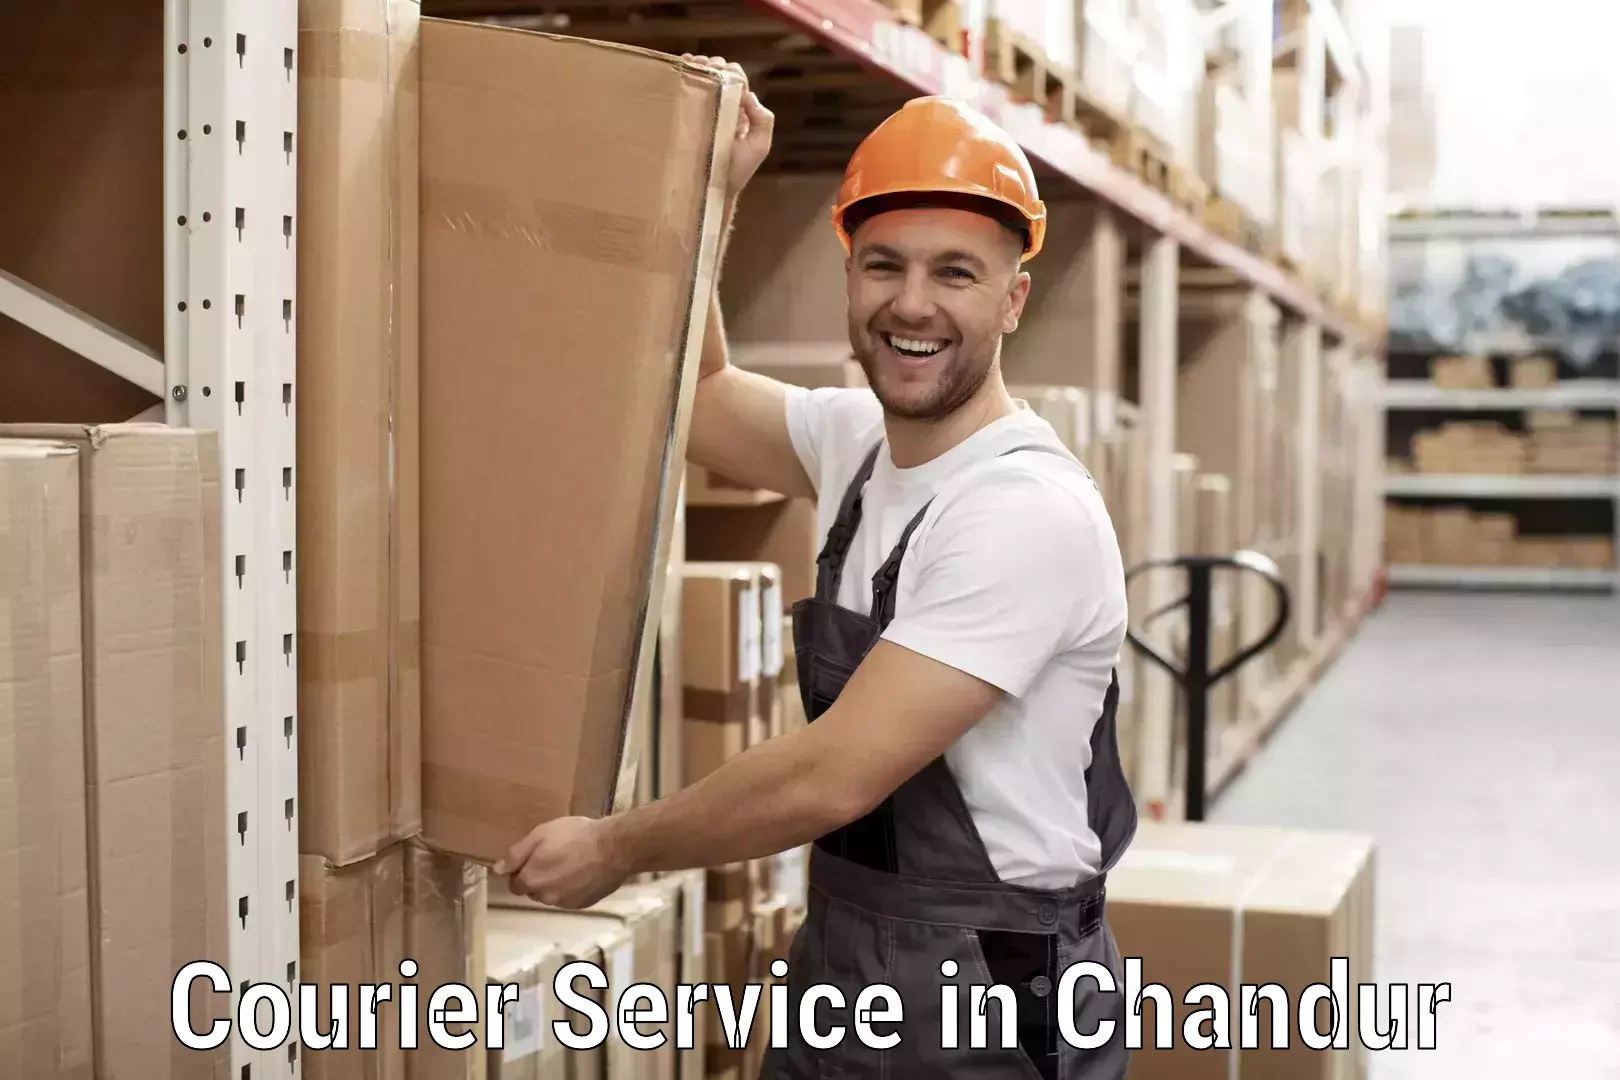 Efficient cargo handling in Chandur